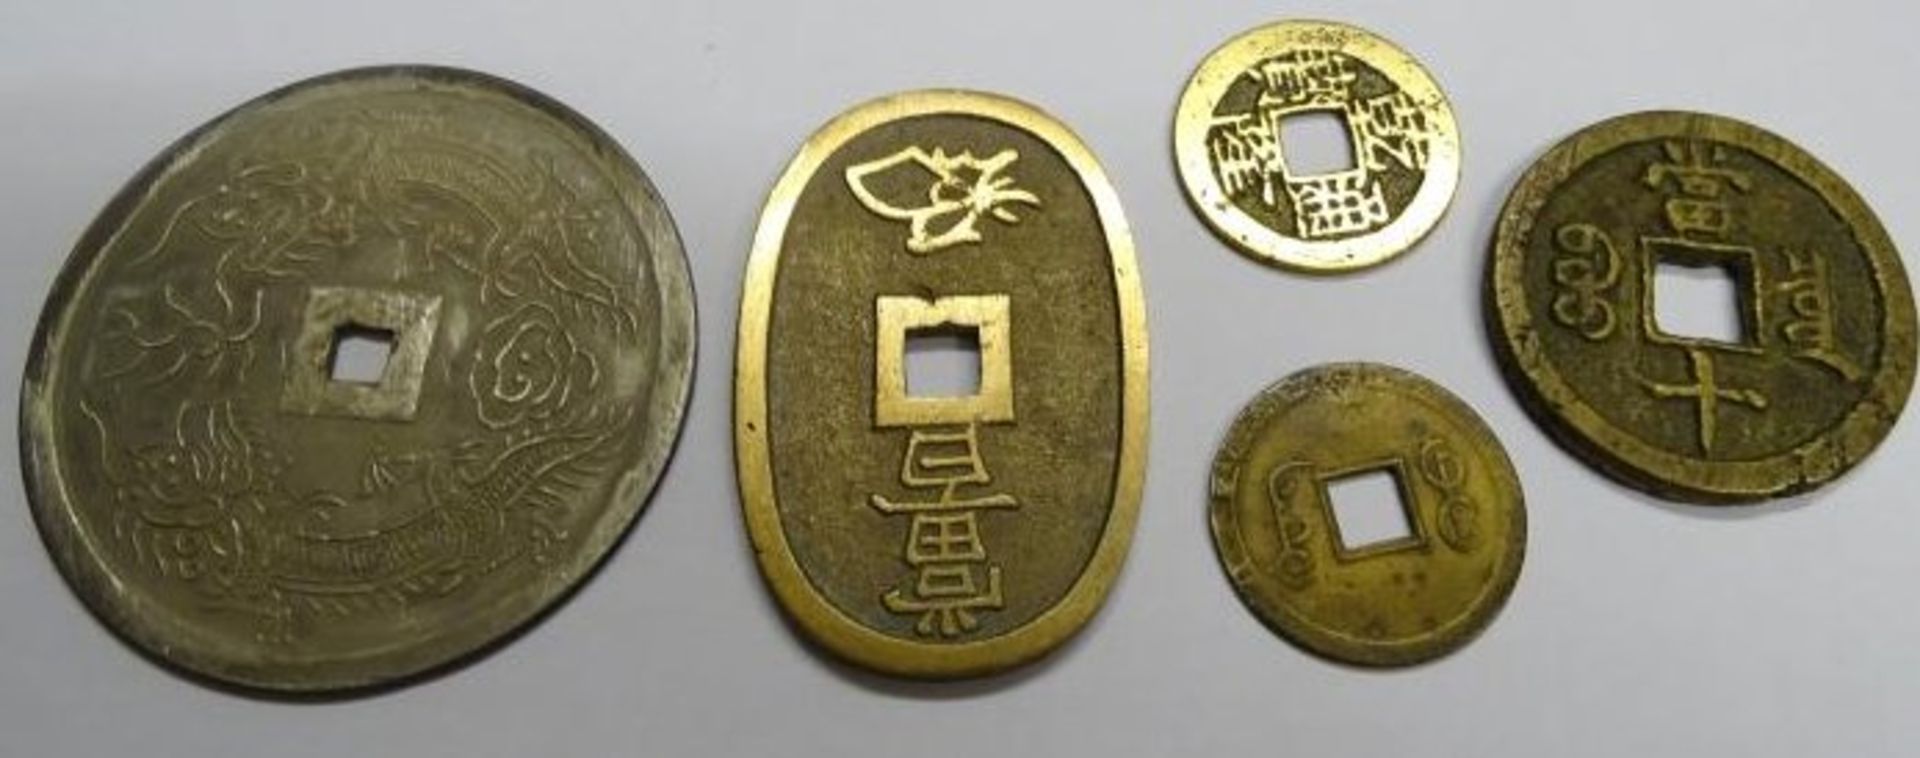 5 Münzen, China, ges. 67,48 gr